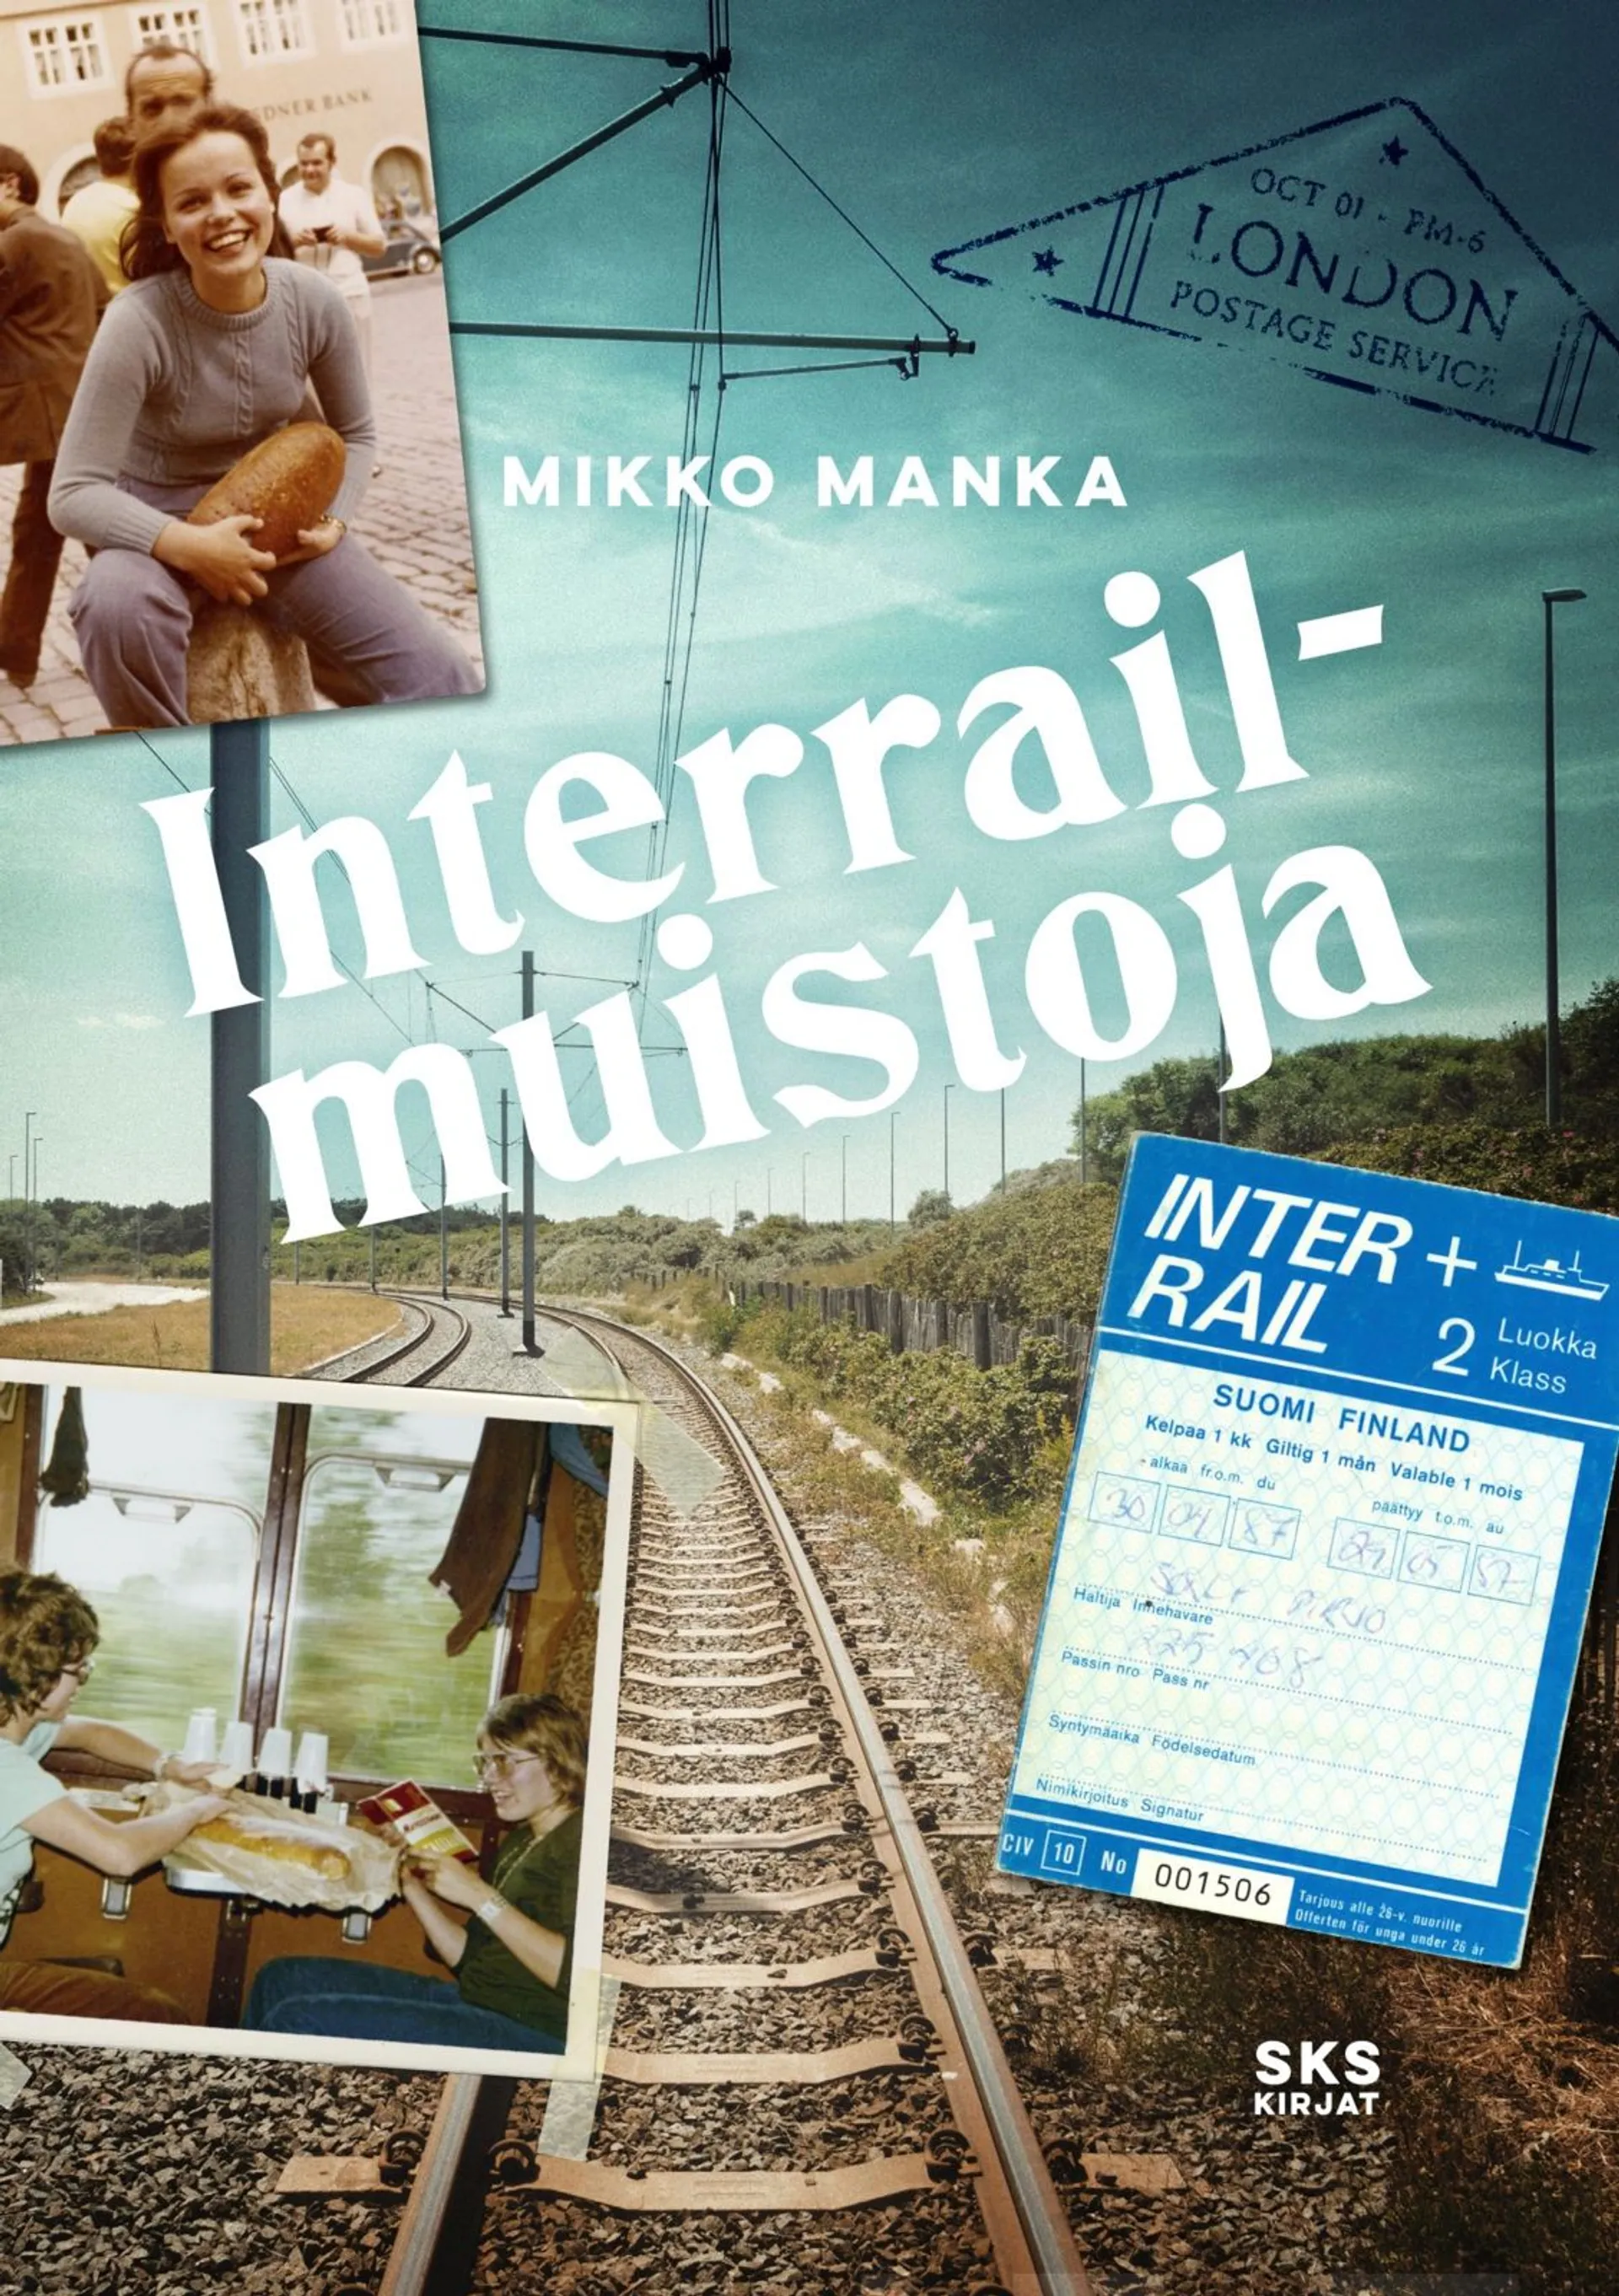 Manka, Interrail-muistoja